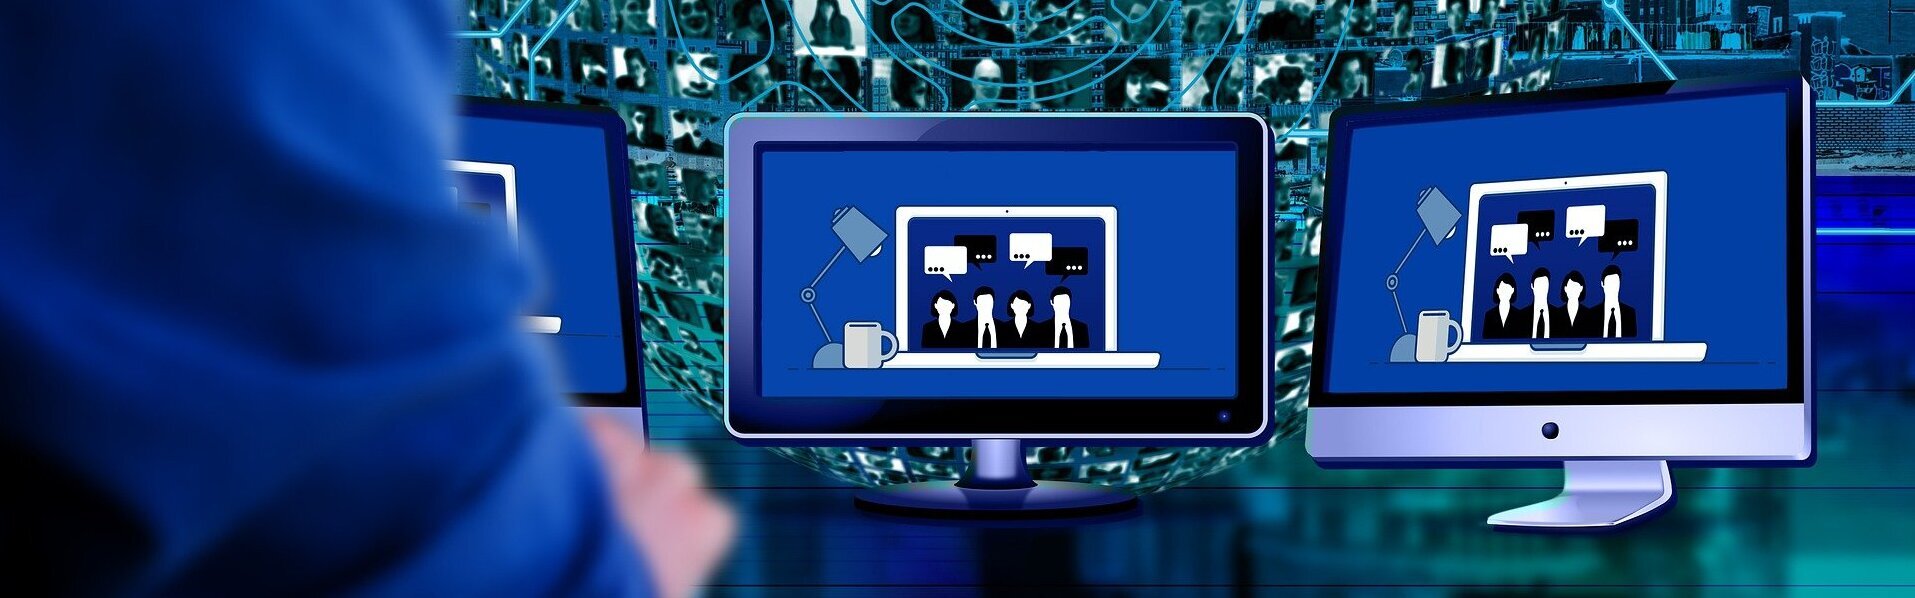 Das Bild zeigt eine Person vor mehreren Bildschirmen, die an einer Videokonferenz teilnimmt. Im Hintergrund sieht man eine Weltkugel mit Bildern verschiedener Personen.